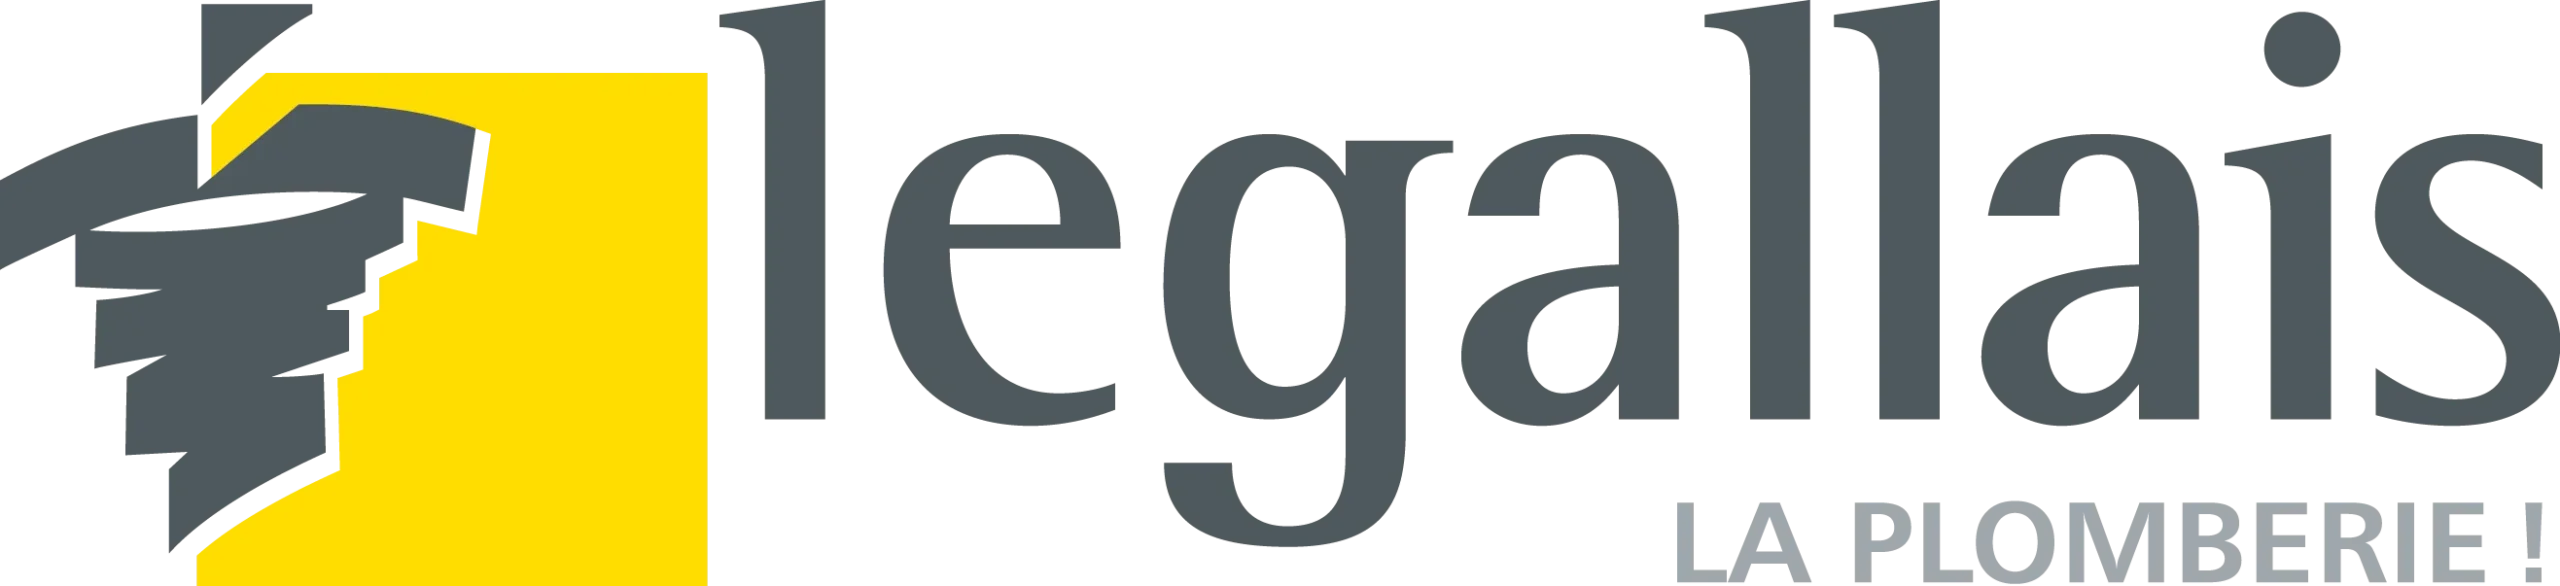 Logo Legallais partenaire Gesec quincaillerie professionnelle outillage visserie EPI